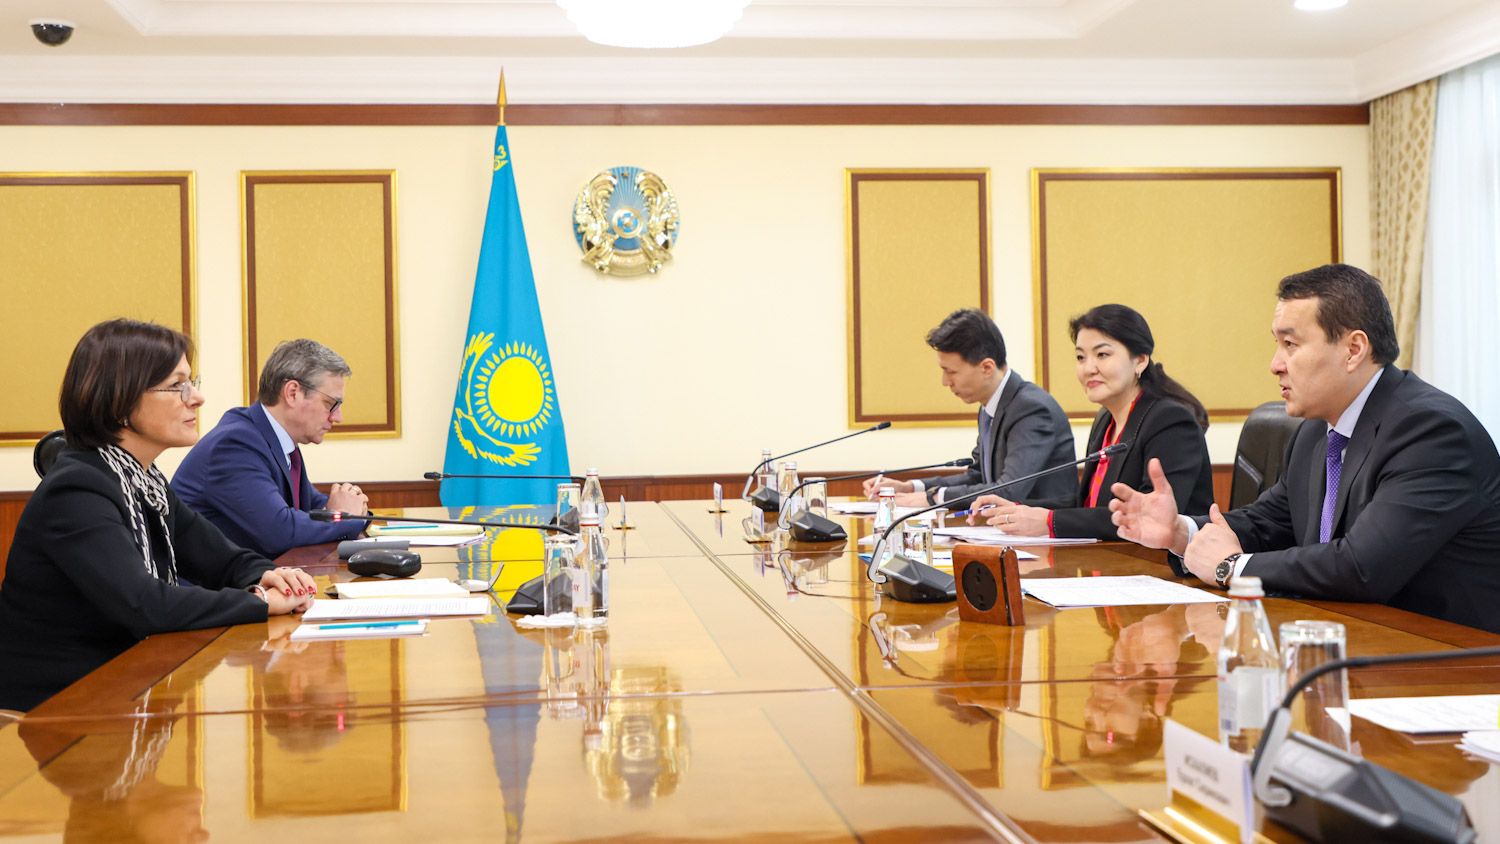 Компания GE Healthcare планирует расширять деятельность в Казахстане